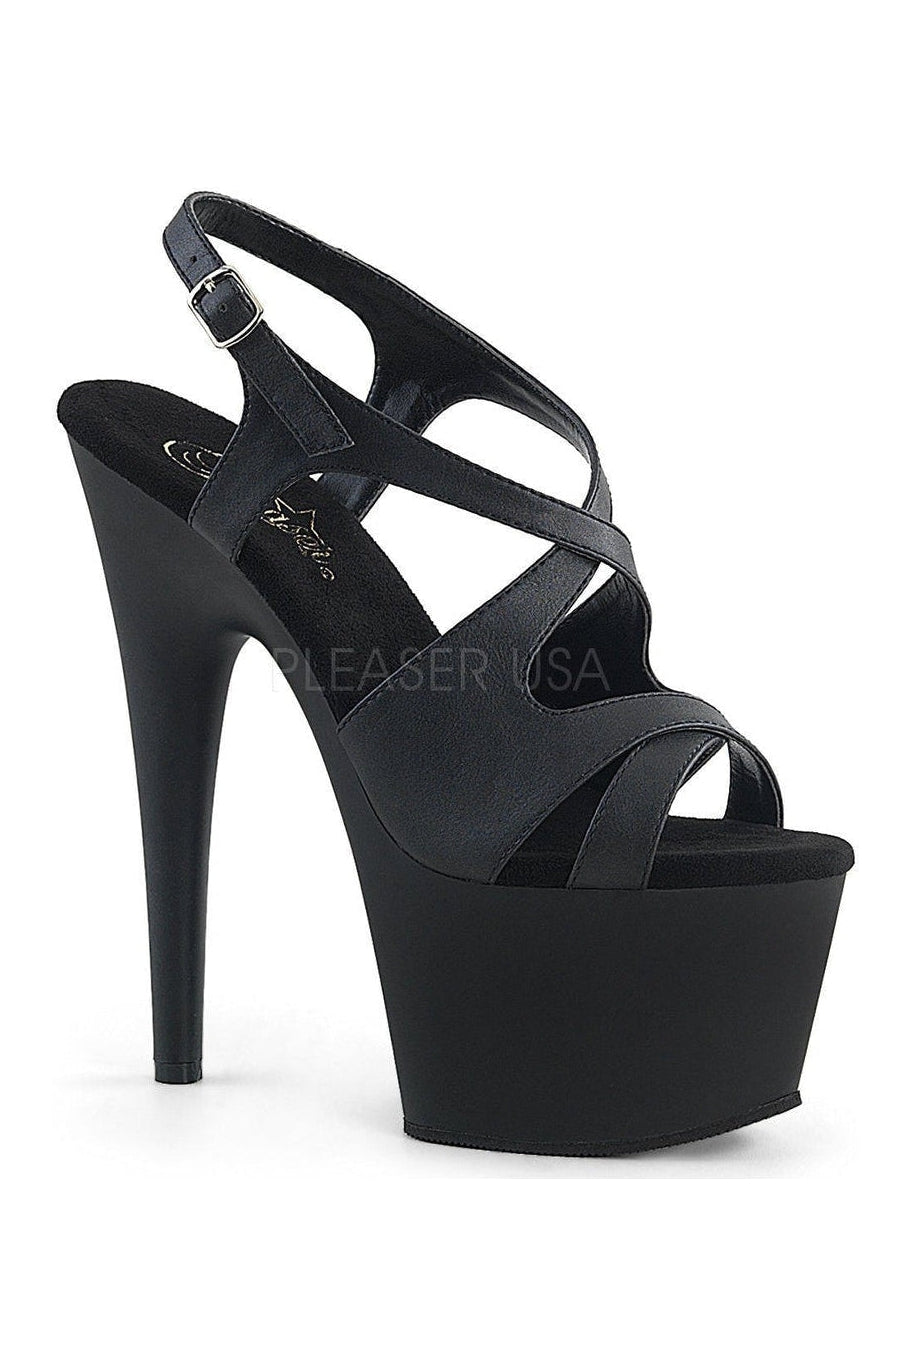 ADORE-730 Platform Sandal | Black Faux Leather-Pleaser-Black-Sandals-SEXYSHOES.COM